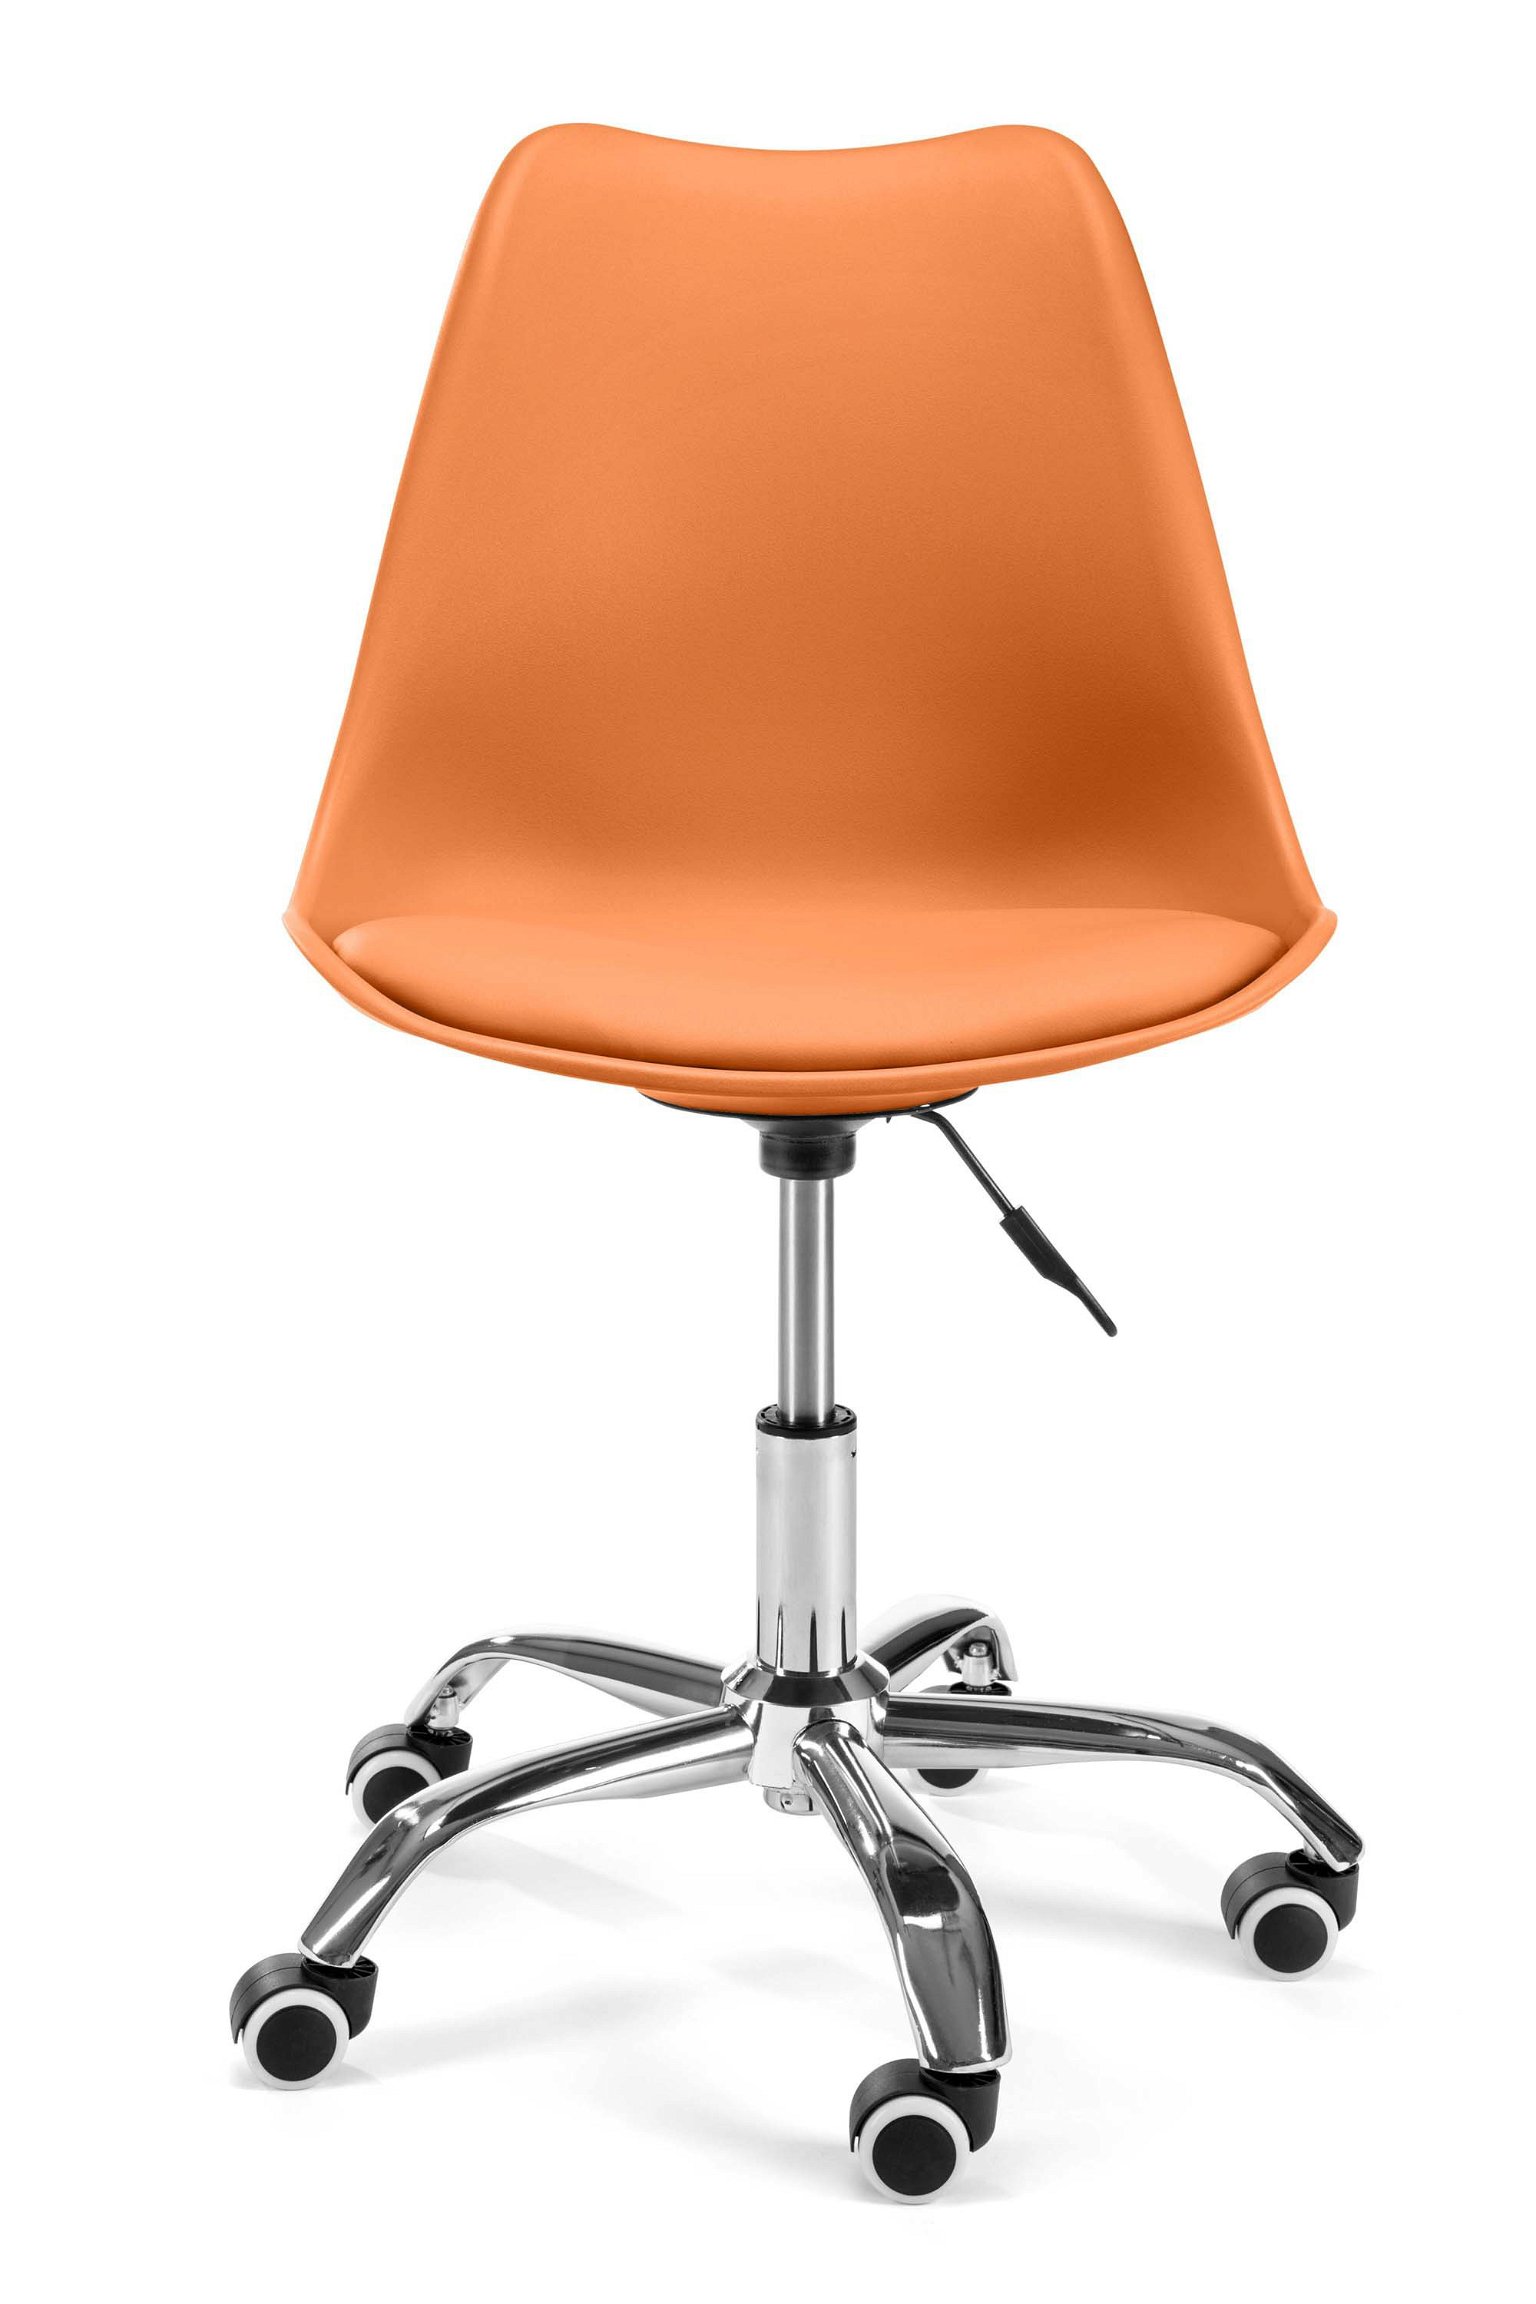 Vaikiška kėdė FD005, oranžinė - 3